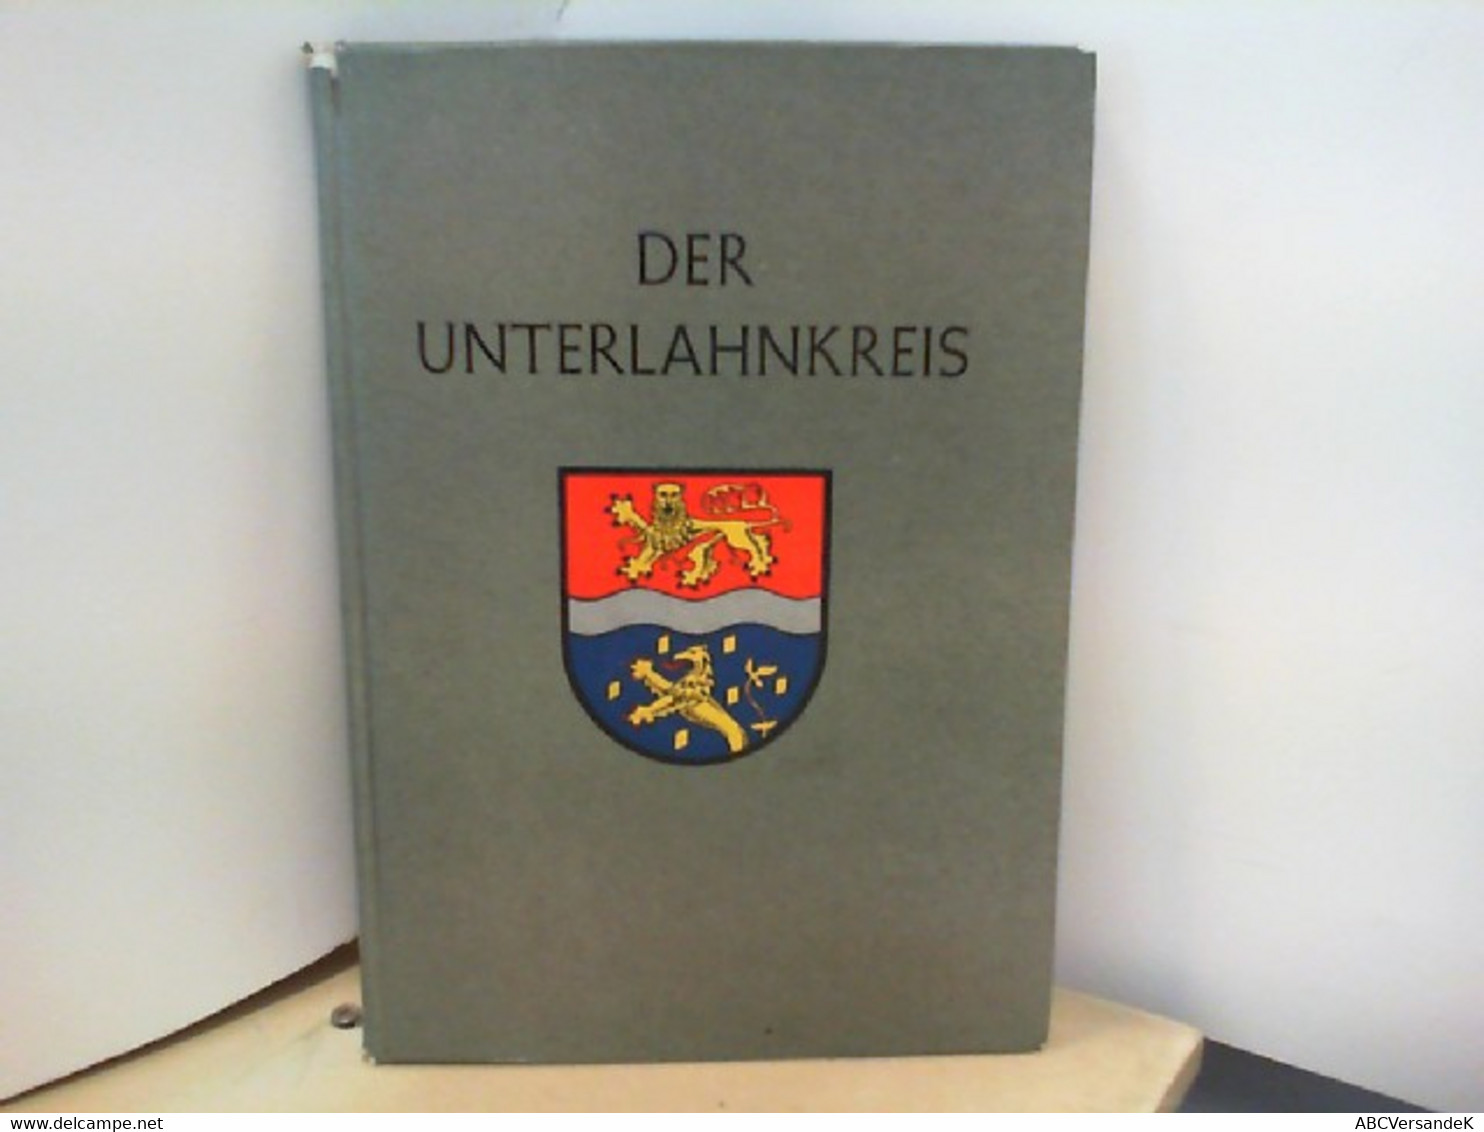 Der Unterlahnkreis - Germany (general)